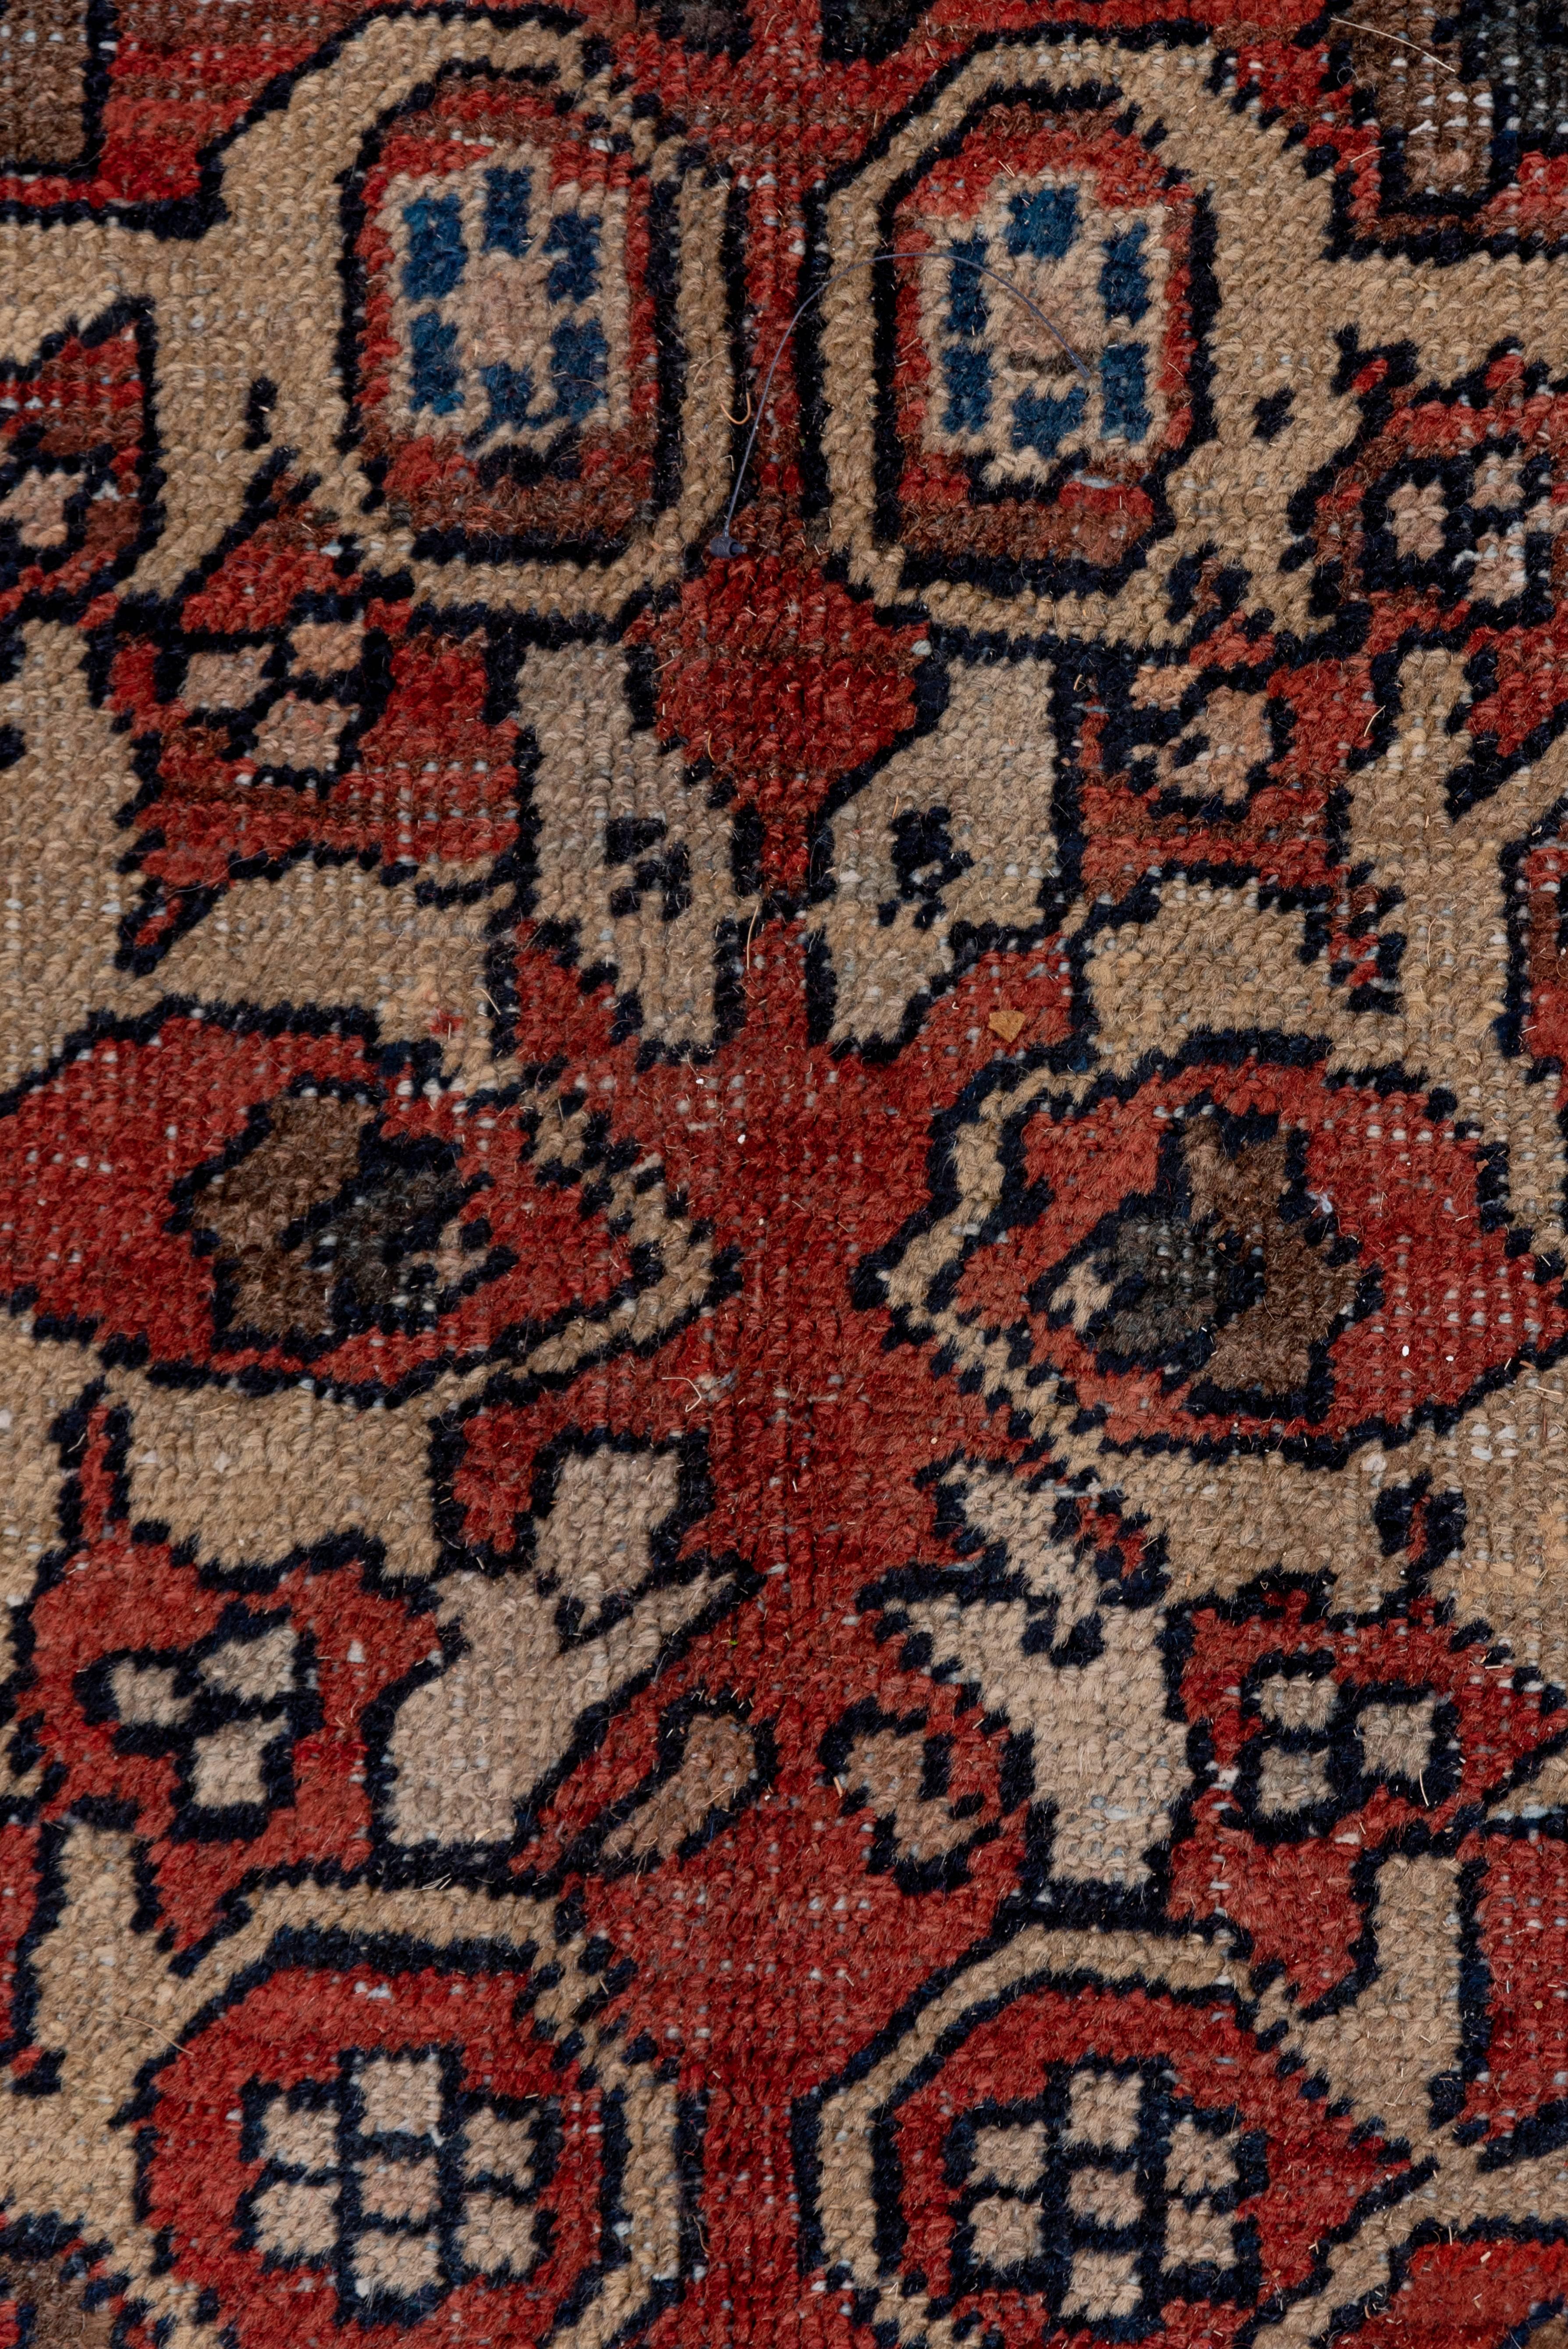 20th Century Antique Red Persian Mahal Carpet